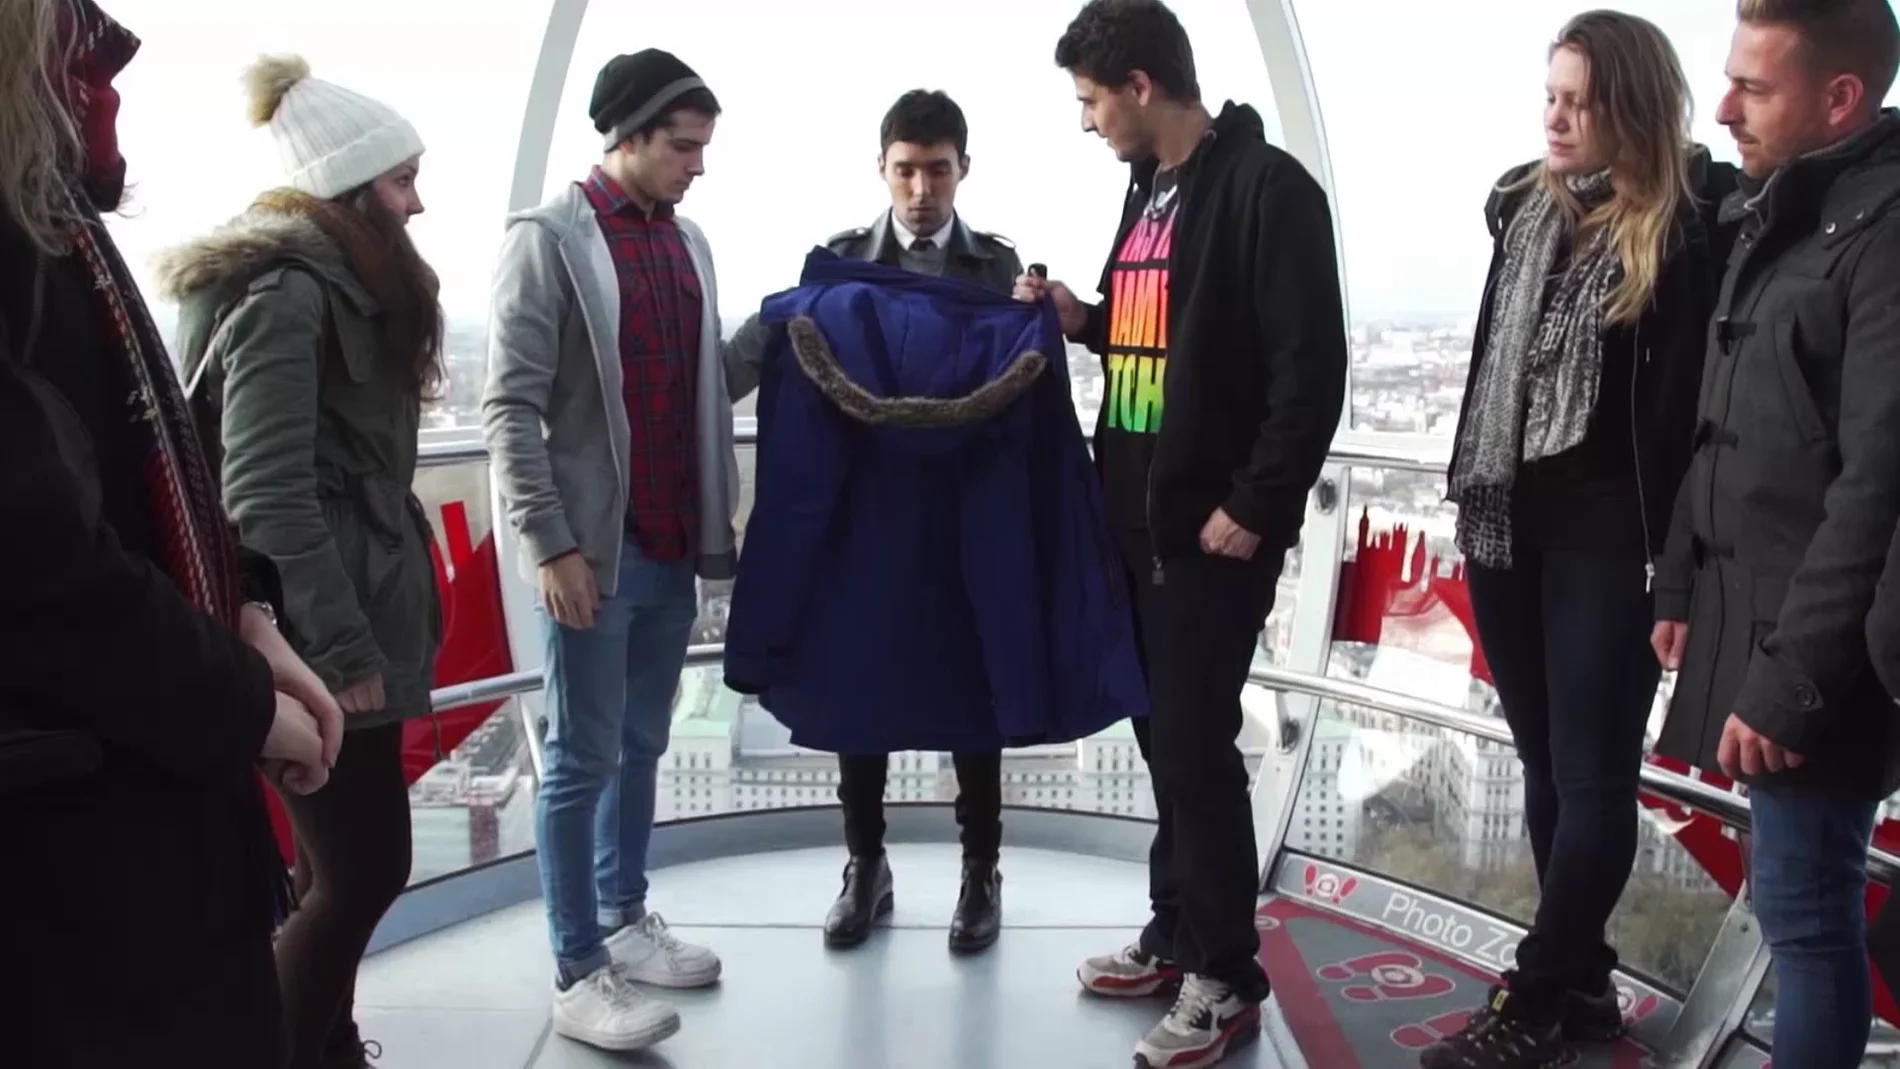 El Mago Pop desaparece en el London Eye